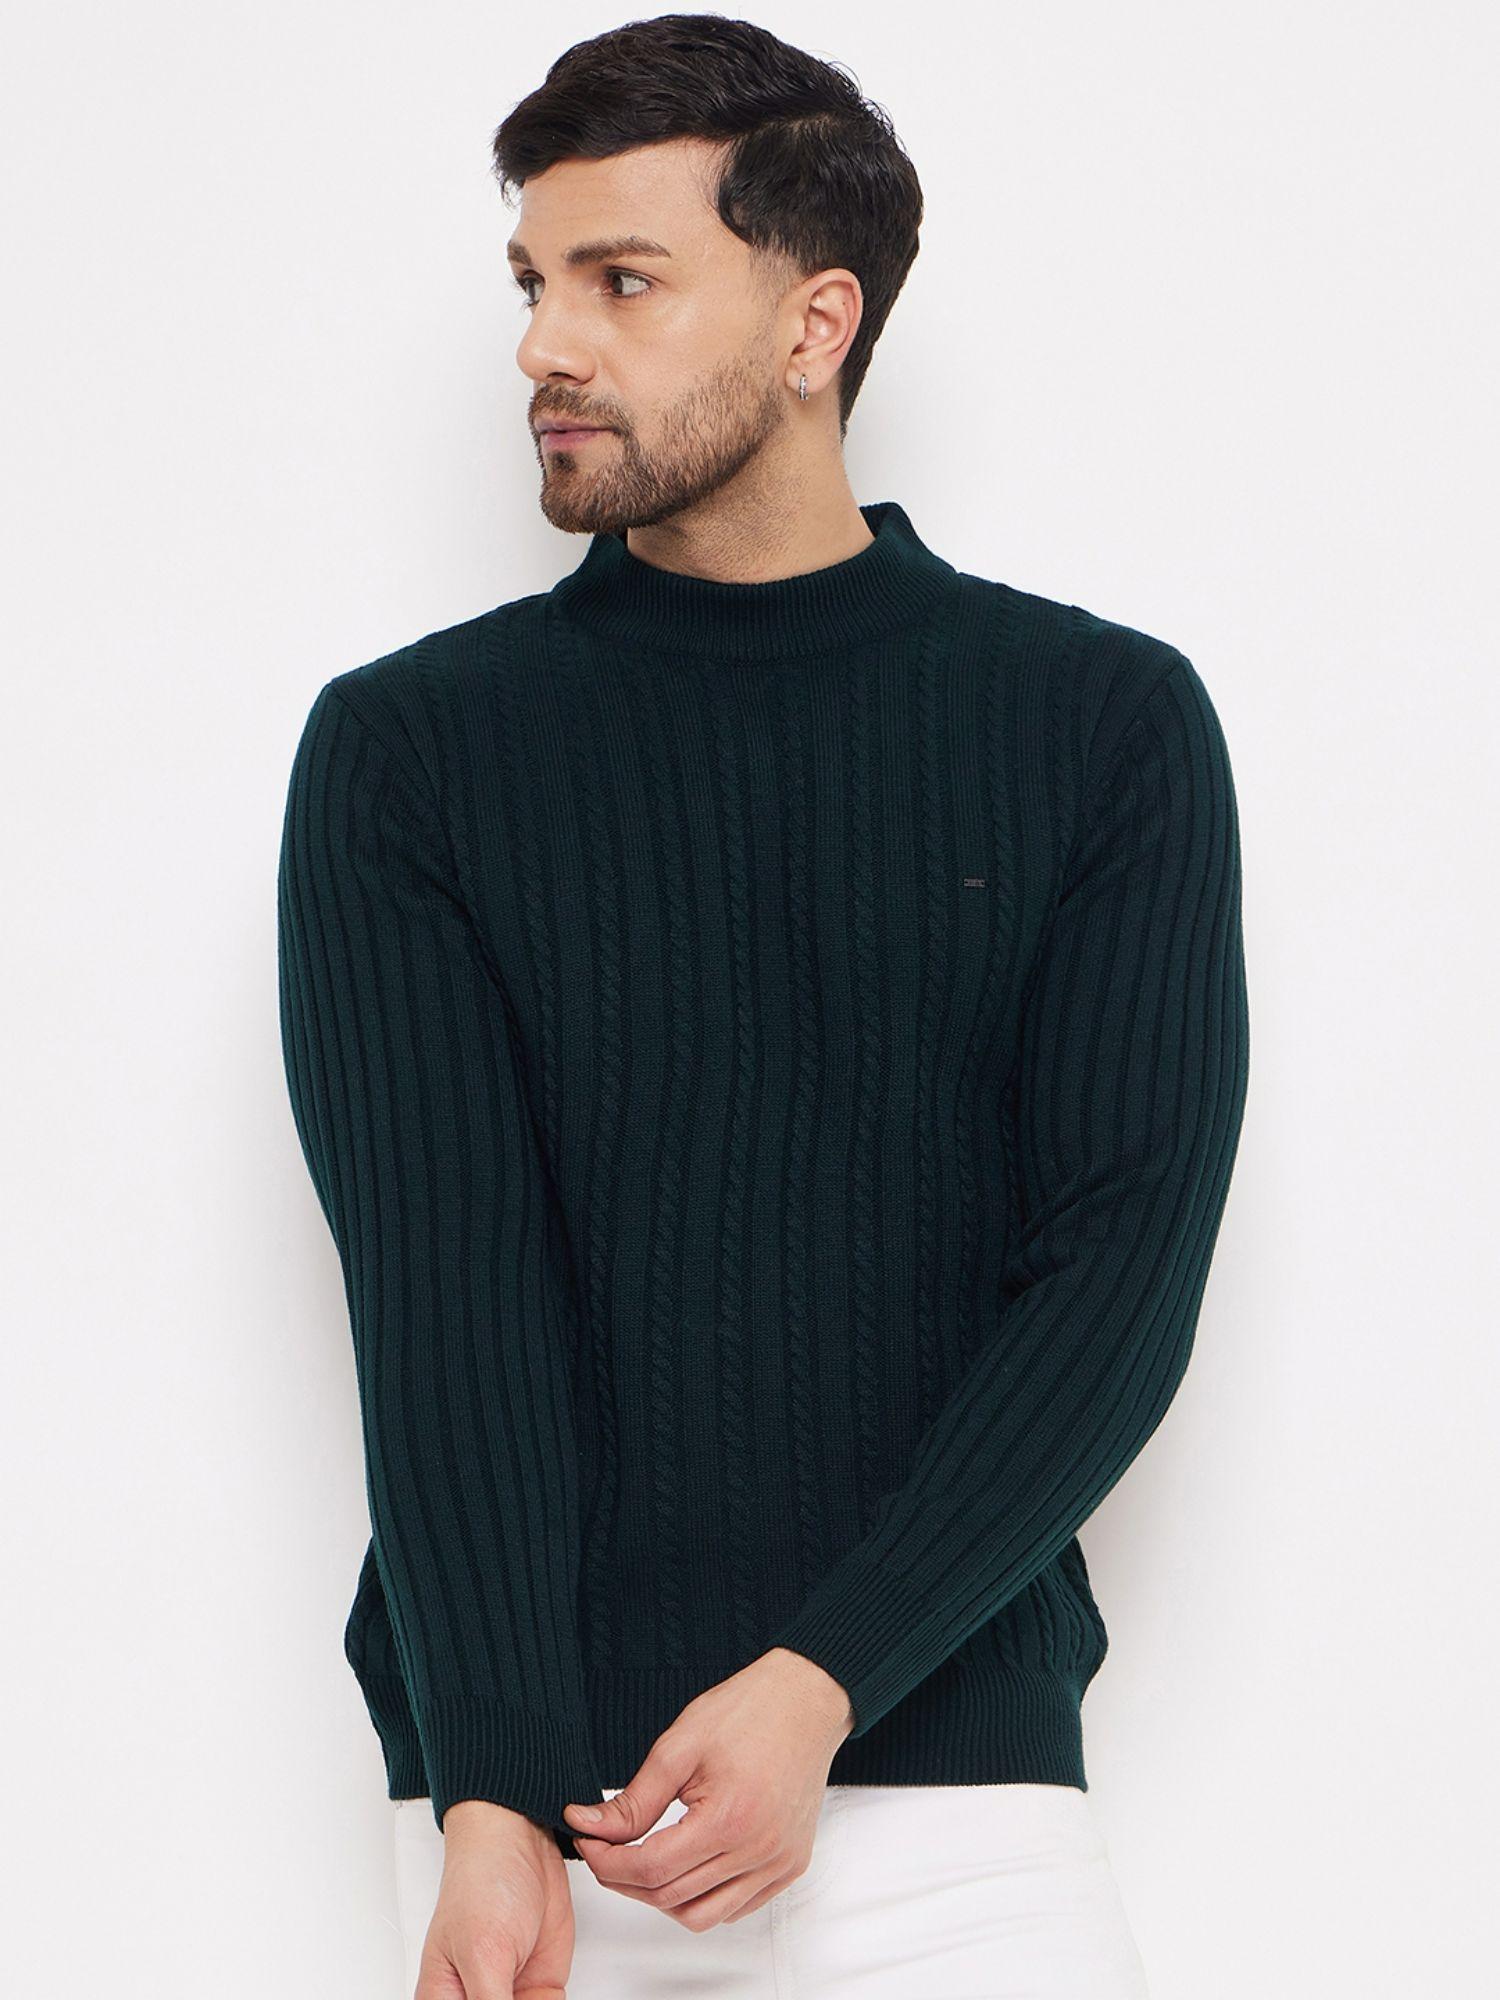 Green Acrylic Sweater